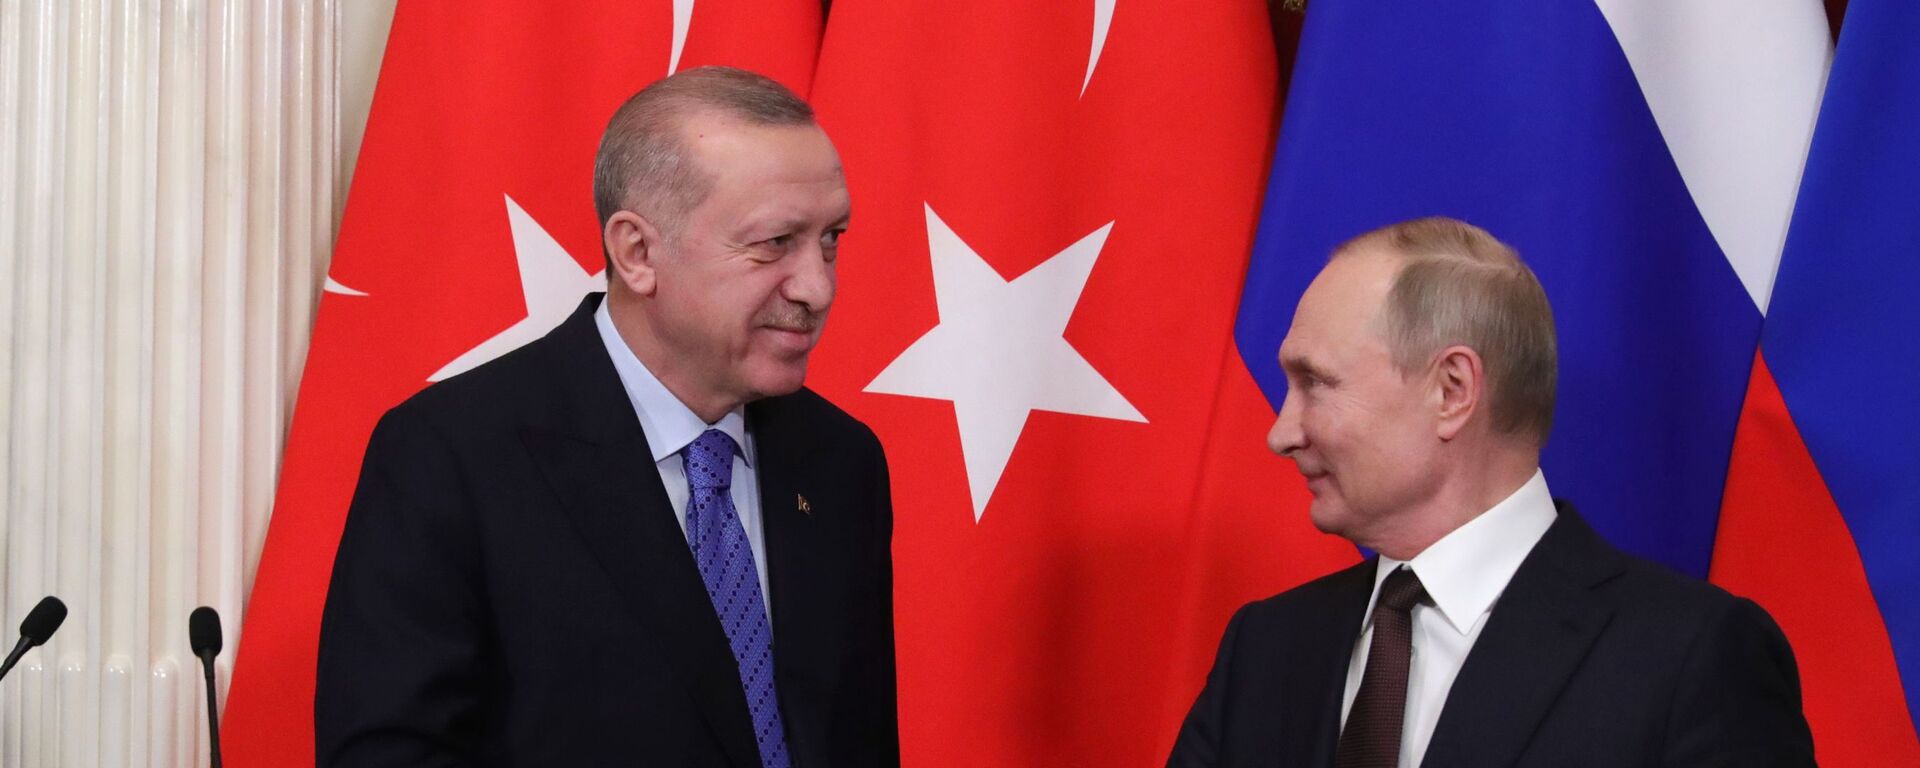 Cuộc gặp giữa Tổng thống Nga Vladimir Putin và Tổng thống Thổ Nhĩ Kỳ Recep Tayyip Erdogan tại Điện Kremlin, Matxcơva  - Sputnik Việt Nam, 1920, 30.05.2022